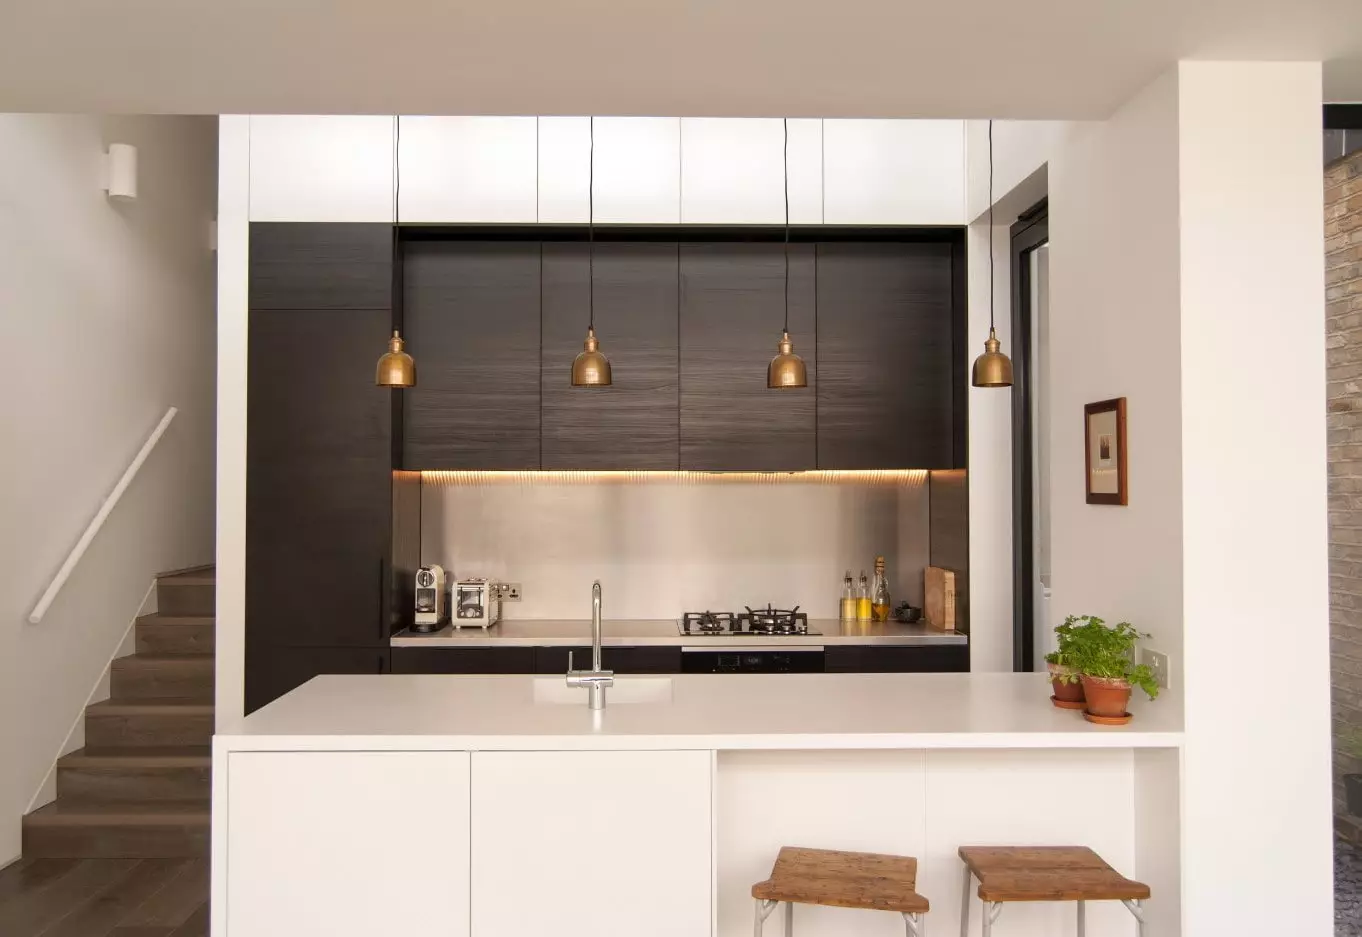 Kjøkken-nisje (42 bilder): Hva er det? Interiørdesign ideer. Hvordan slå en kjøkken nisje i leiligheten? Minimum kvadratstørrelse 9483_39